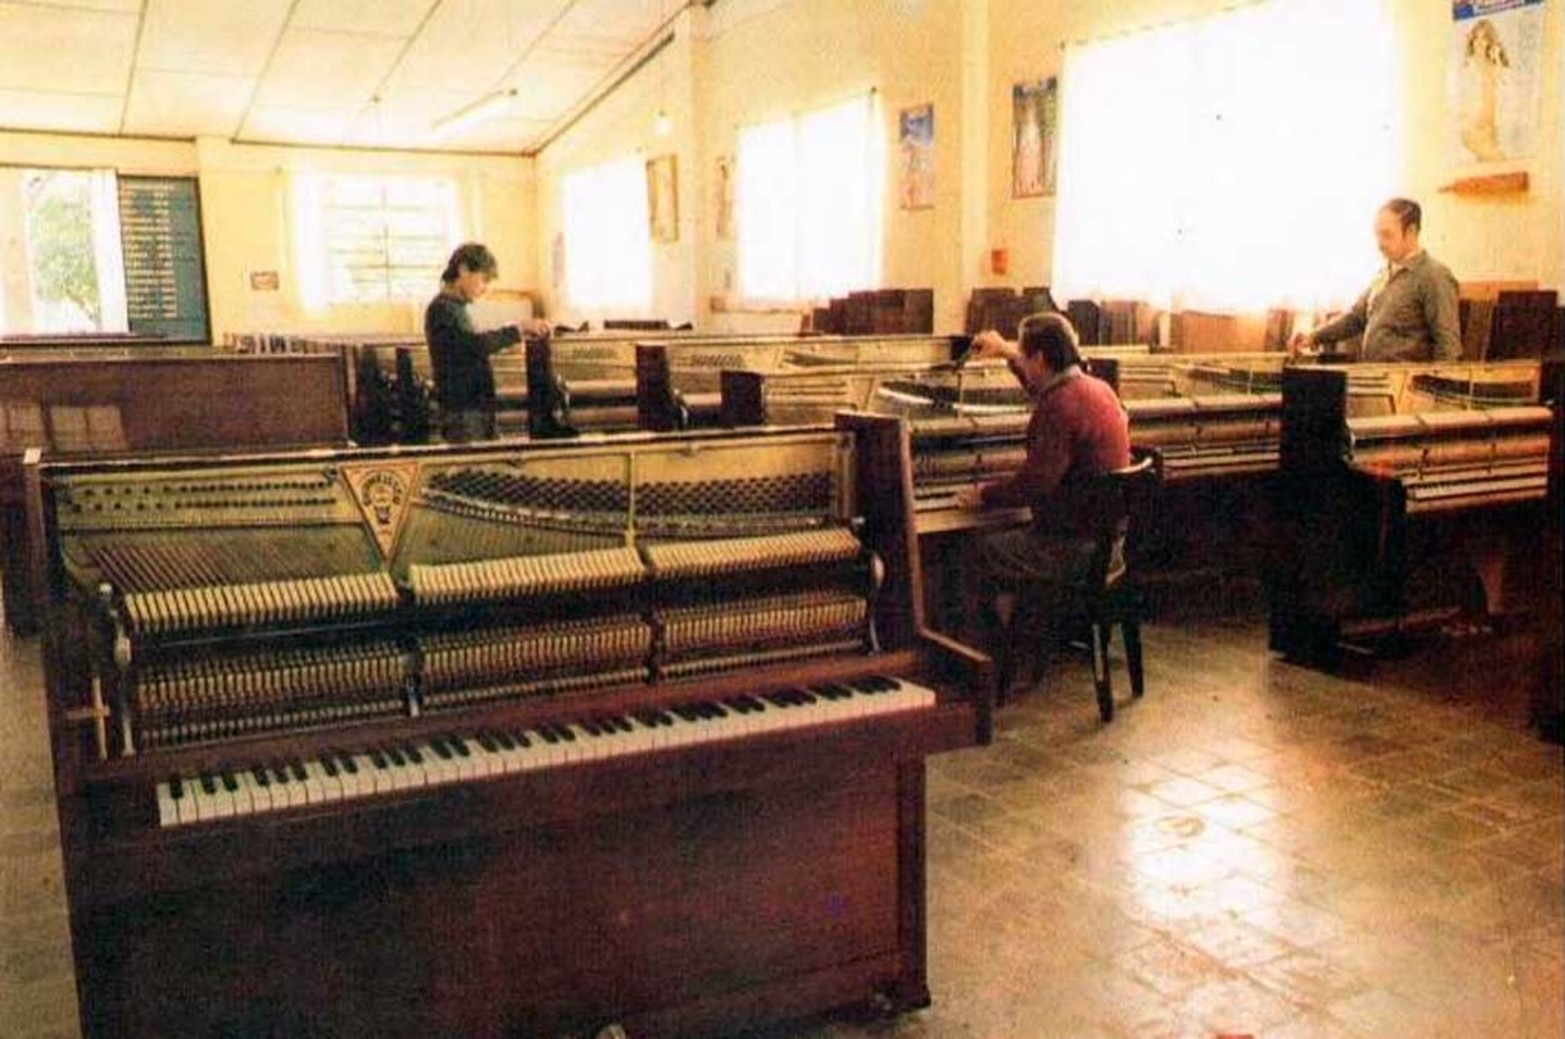 Imagen extraída de la publicación "Pilar un pueblo y sus pianos"